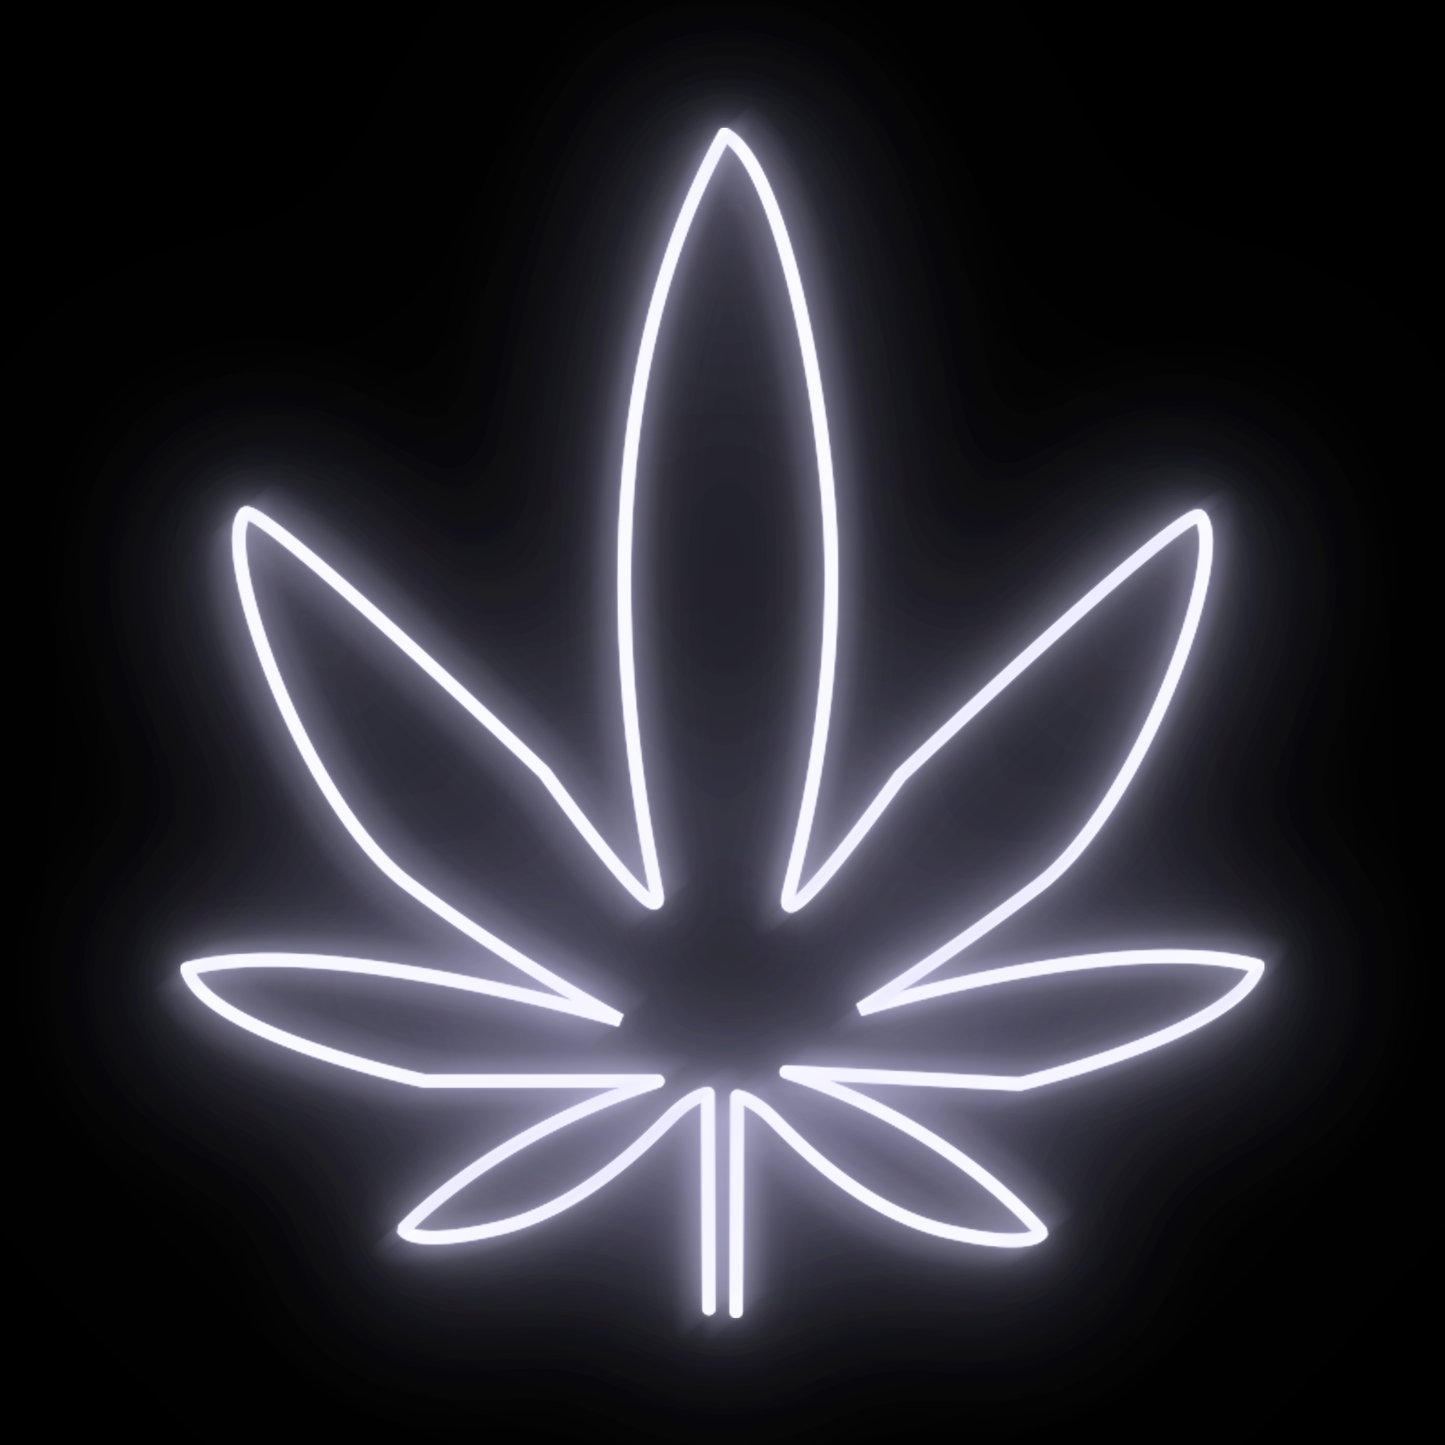 Mary Jane - Cannabis Leaf